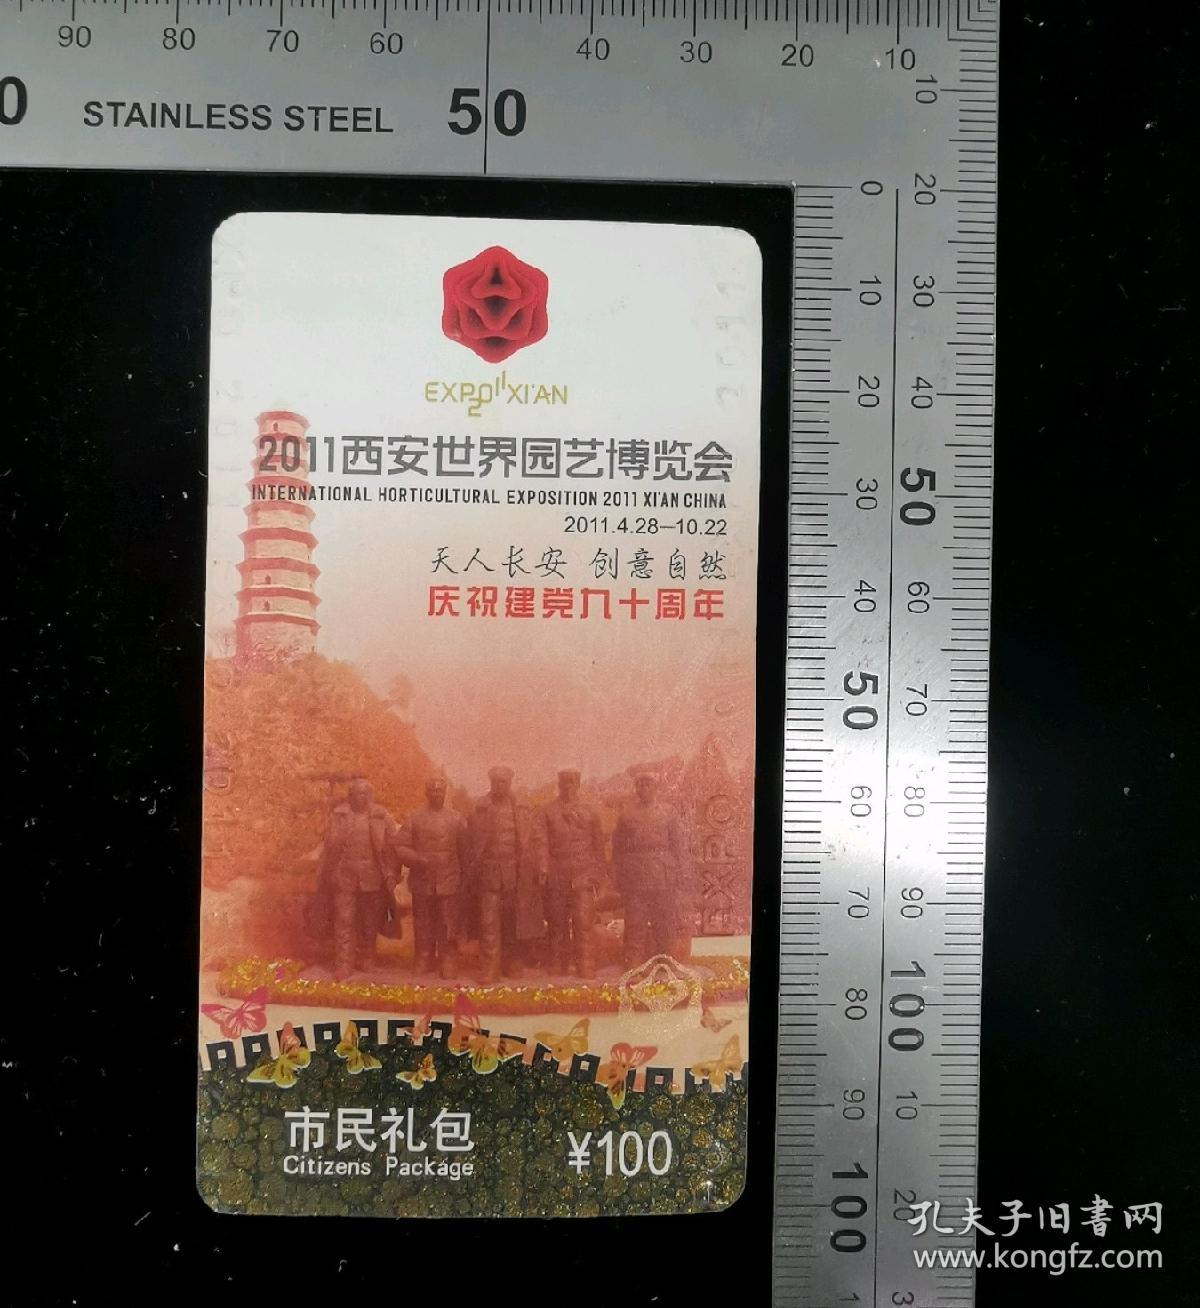 门票:2011西安世园会门票(市民礼包票)09,陕西,少见硬卡纸门票,面值100元,4.5×9.7厘米,编号32271,gyx22200.77